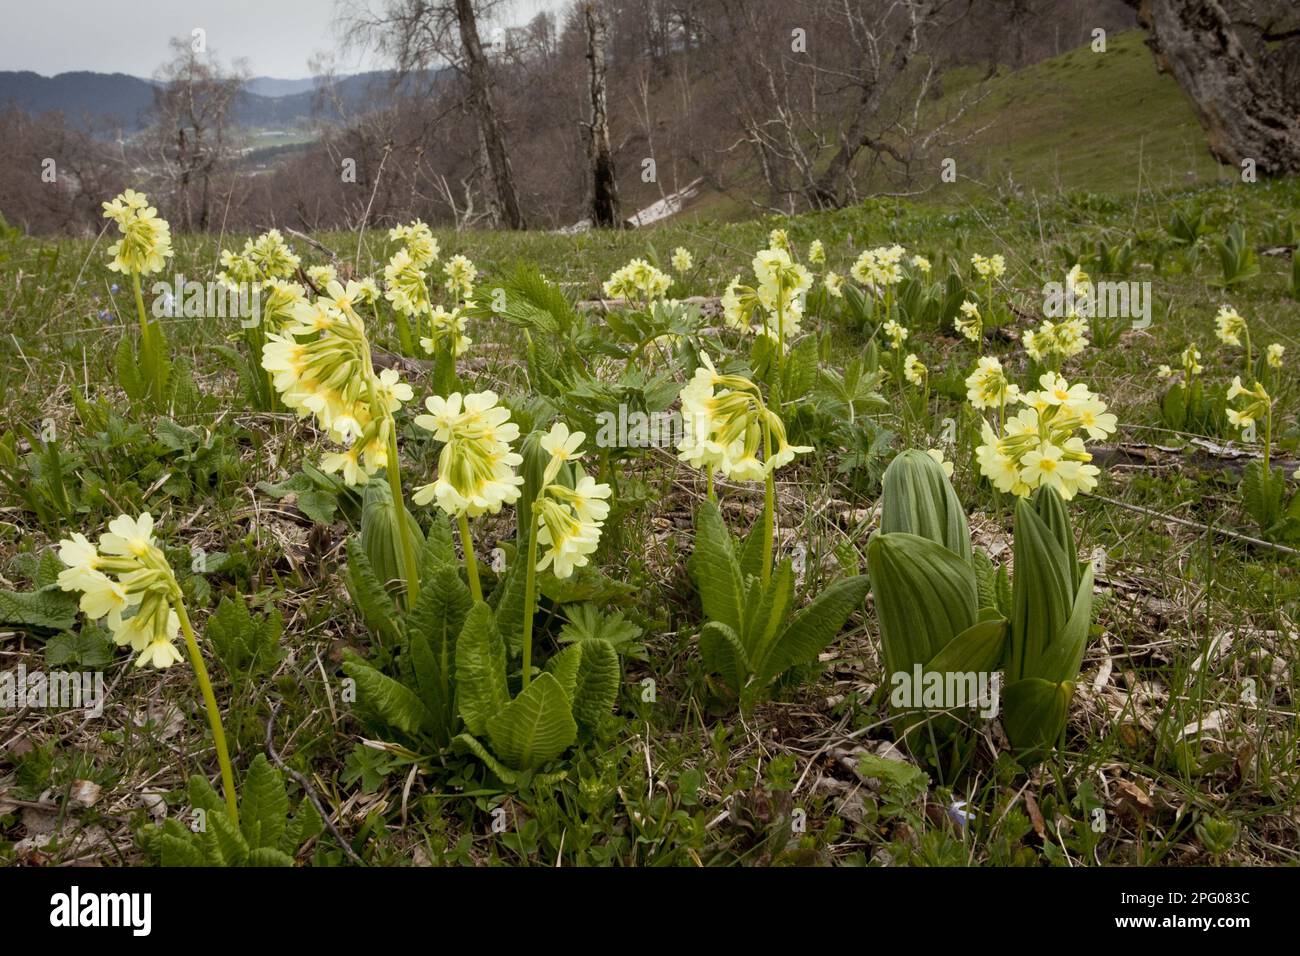 Caucasus oxlip (Primula ruprechtii) flowers, at the mountain habitat, Lesser Caucasus, Georgia, Spring Stock Photo